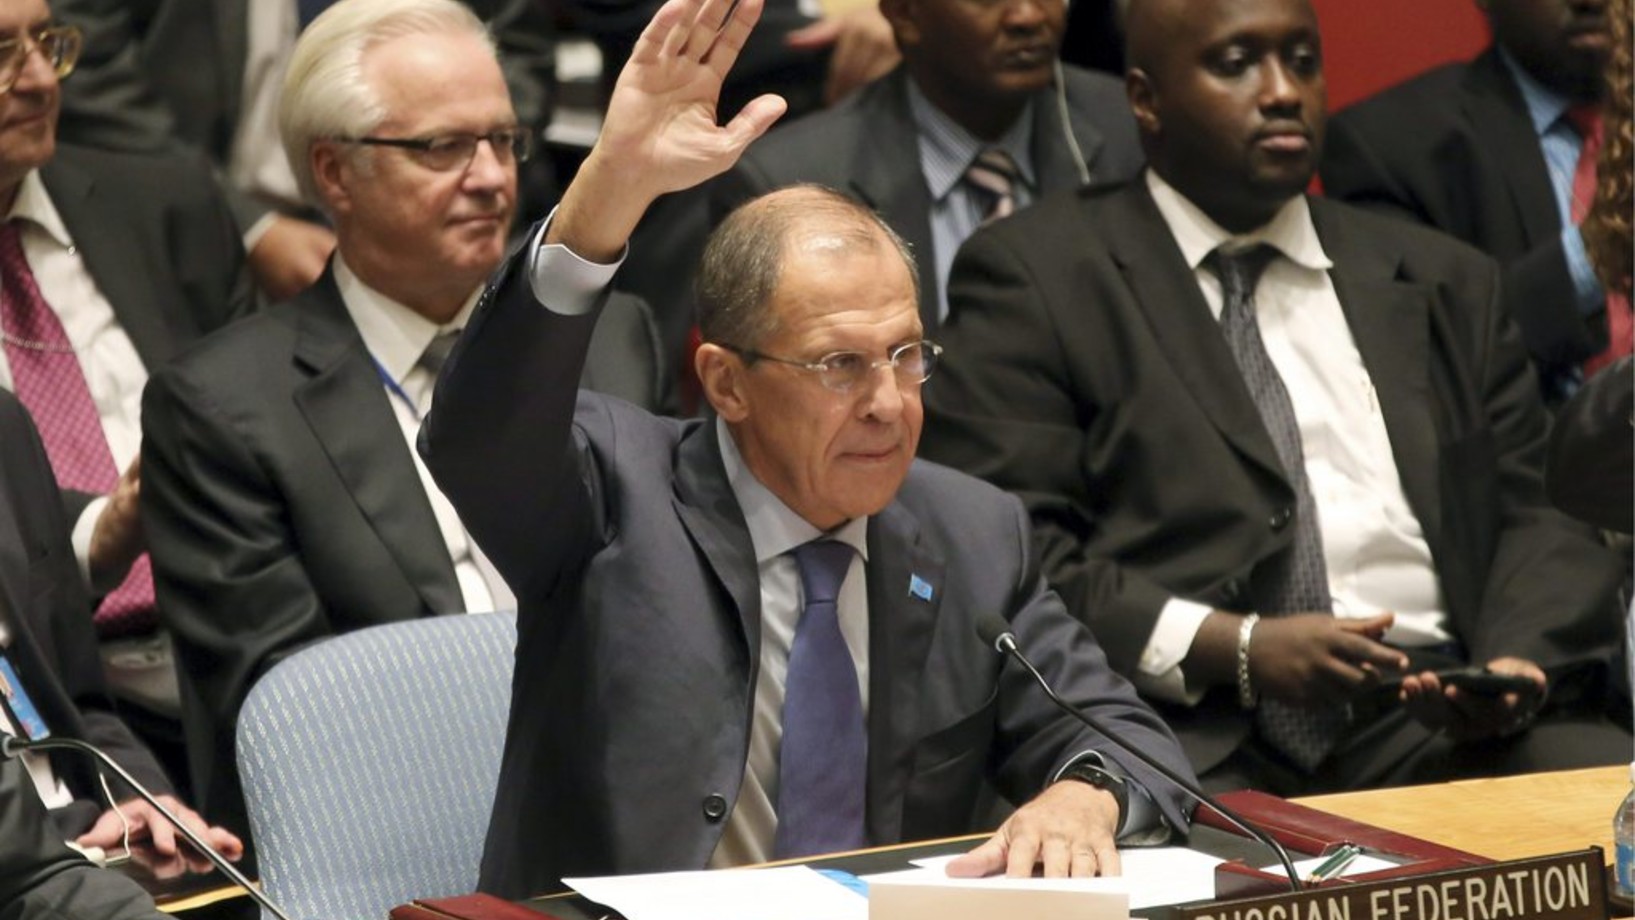 Der russische Aussenminister Sergej Lawrow stimmt in der Nacht zum Samstag im Uno-Sicherheitsrat für eine Uno-Resolution, die Syrien auffordert, alle chemischen Waffen zu vernichten. (Foto: Keystone/AP/Mary Altaffer)

